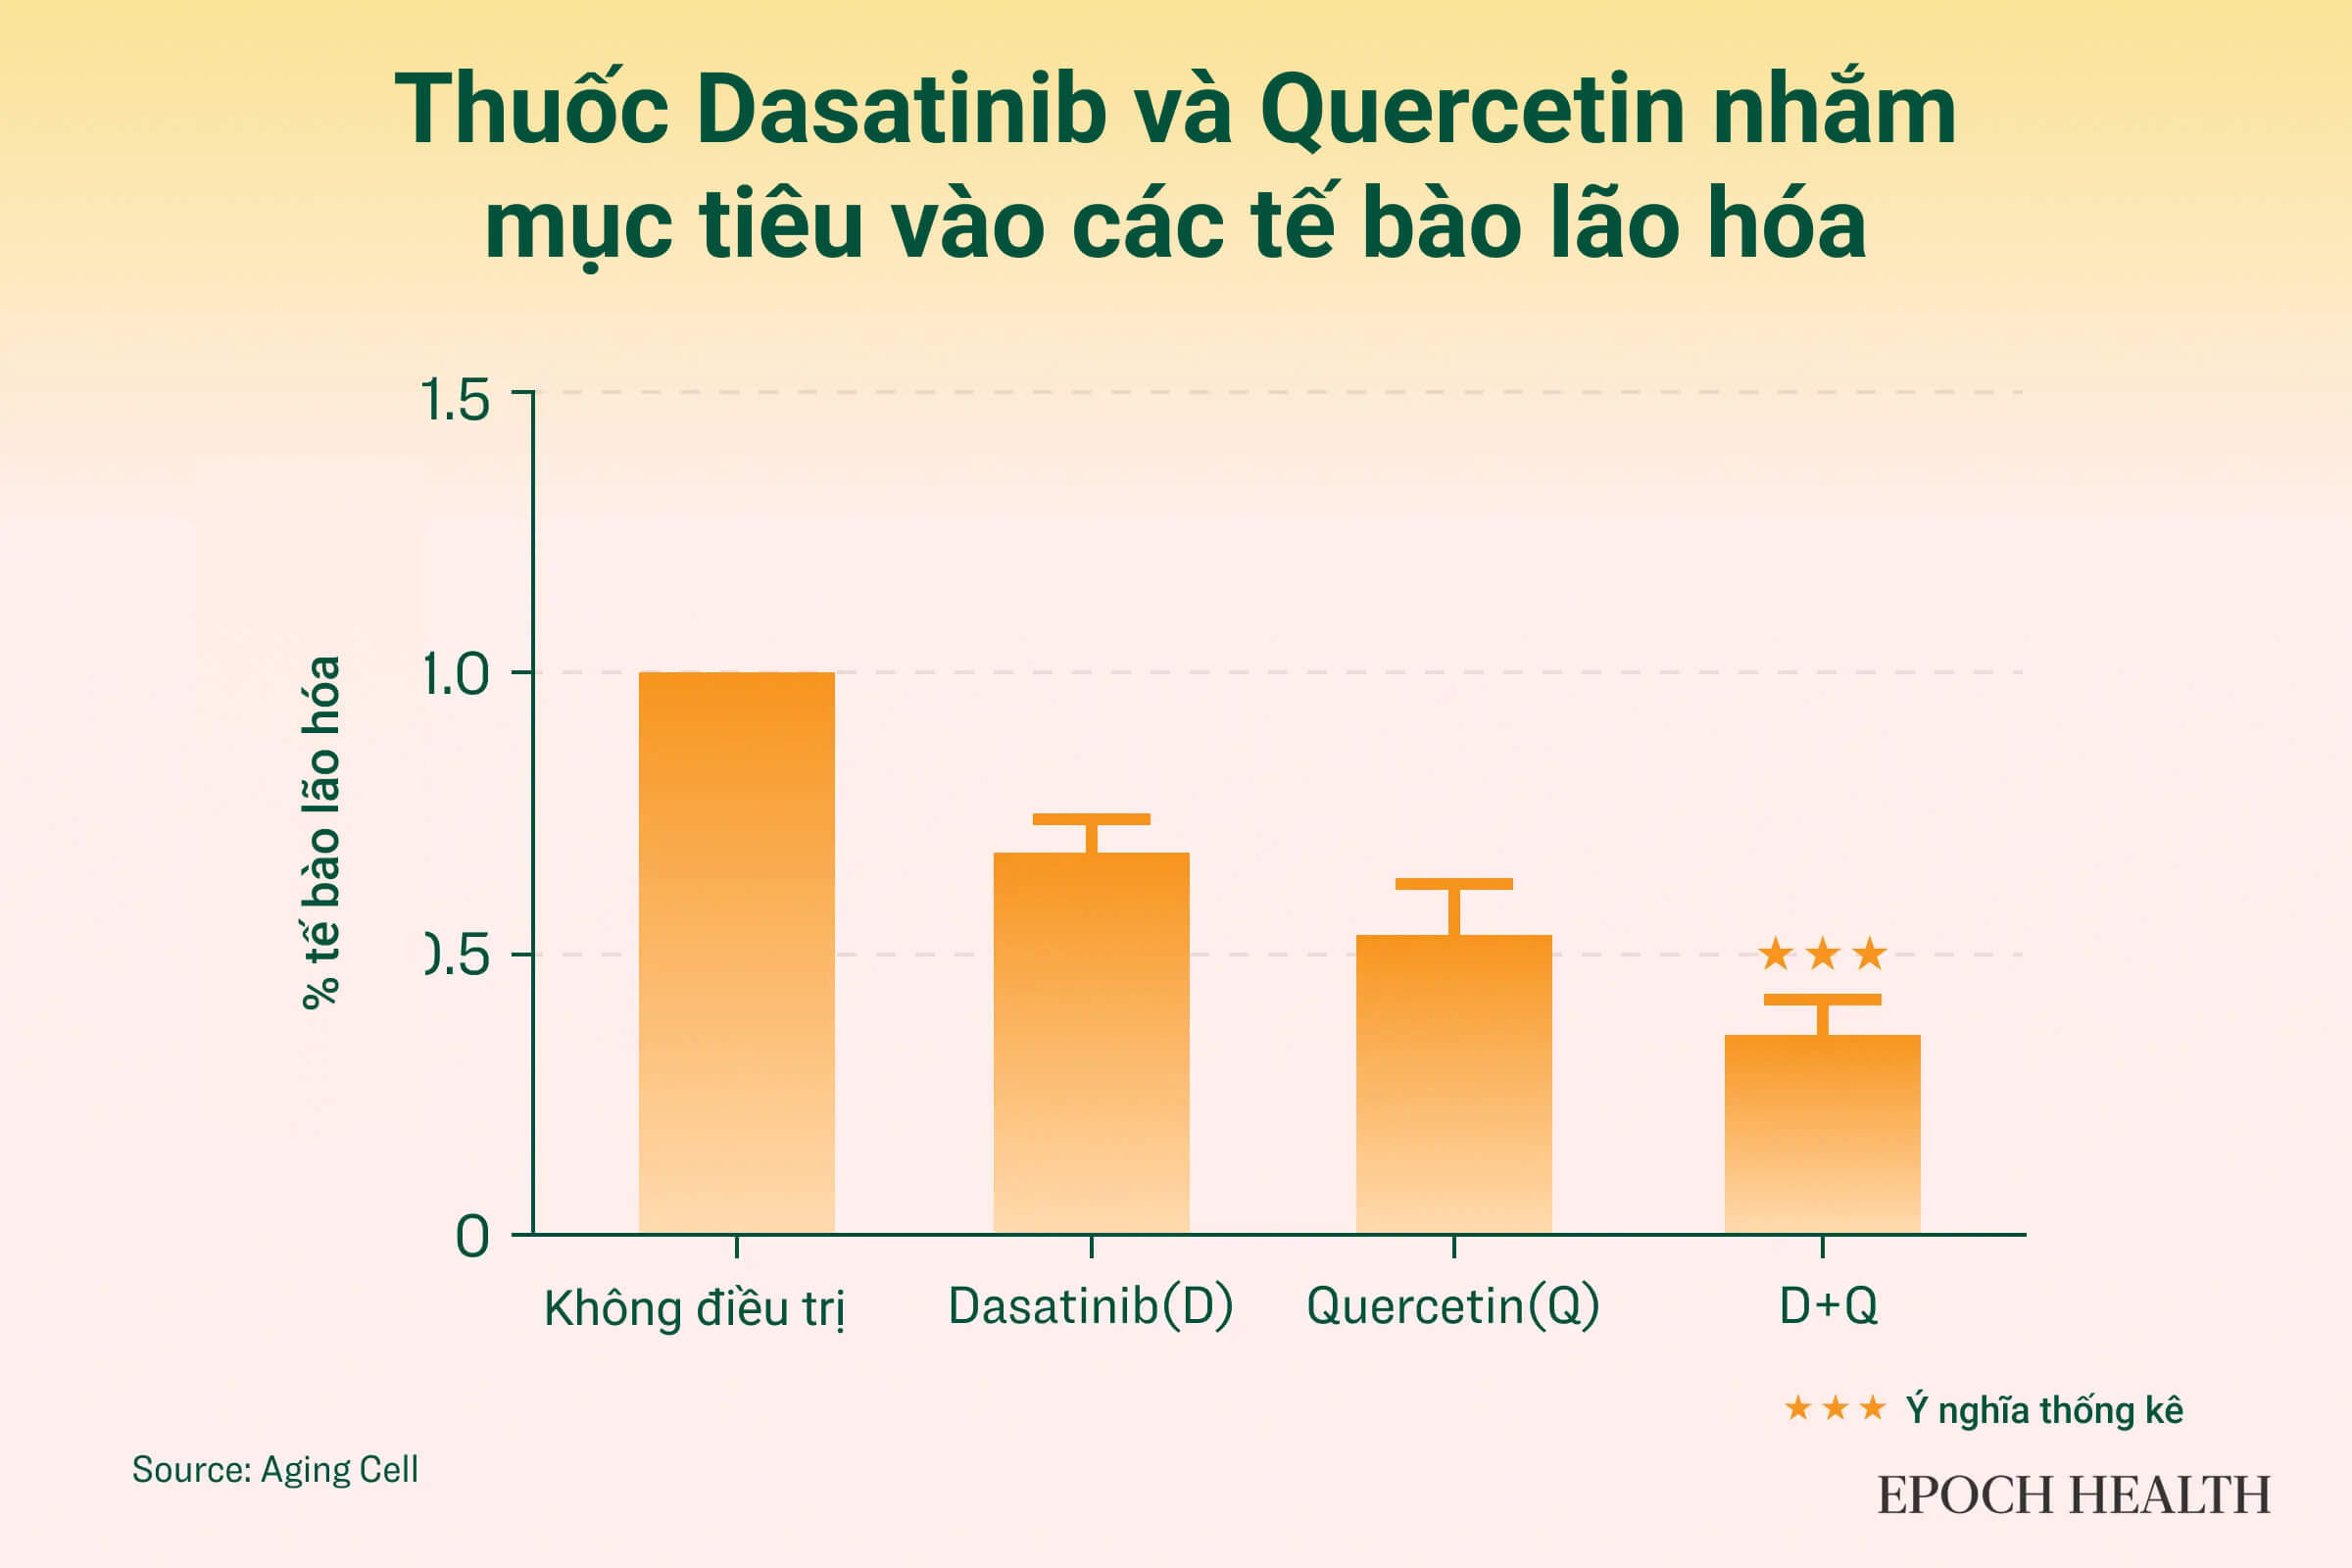 Dasatinib ở 250nM, quercetin ở 50μM, hoặc dasatinib 250nM với quercetin ở 50μM (D+Q), ảnh hưởng đến tỷ lệ tế bào lão hóa trong mô hình nguyên bào sợi phôi chuột. (Ảnh: The Epoch Times)